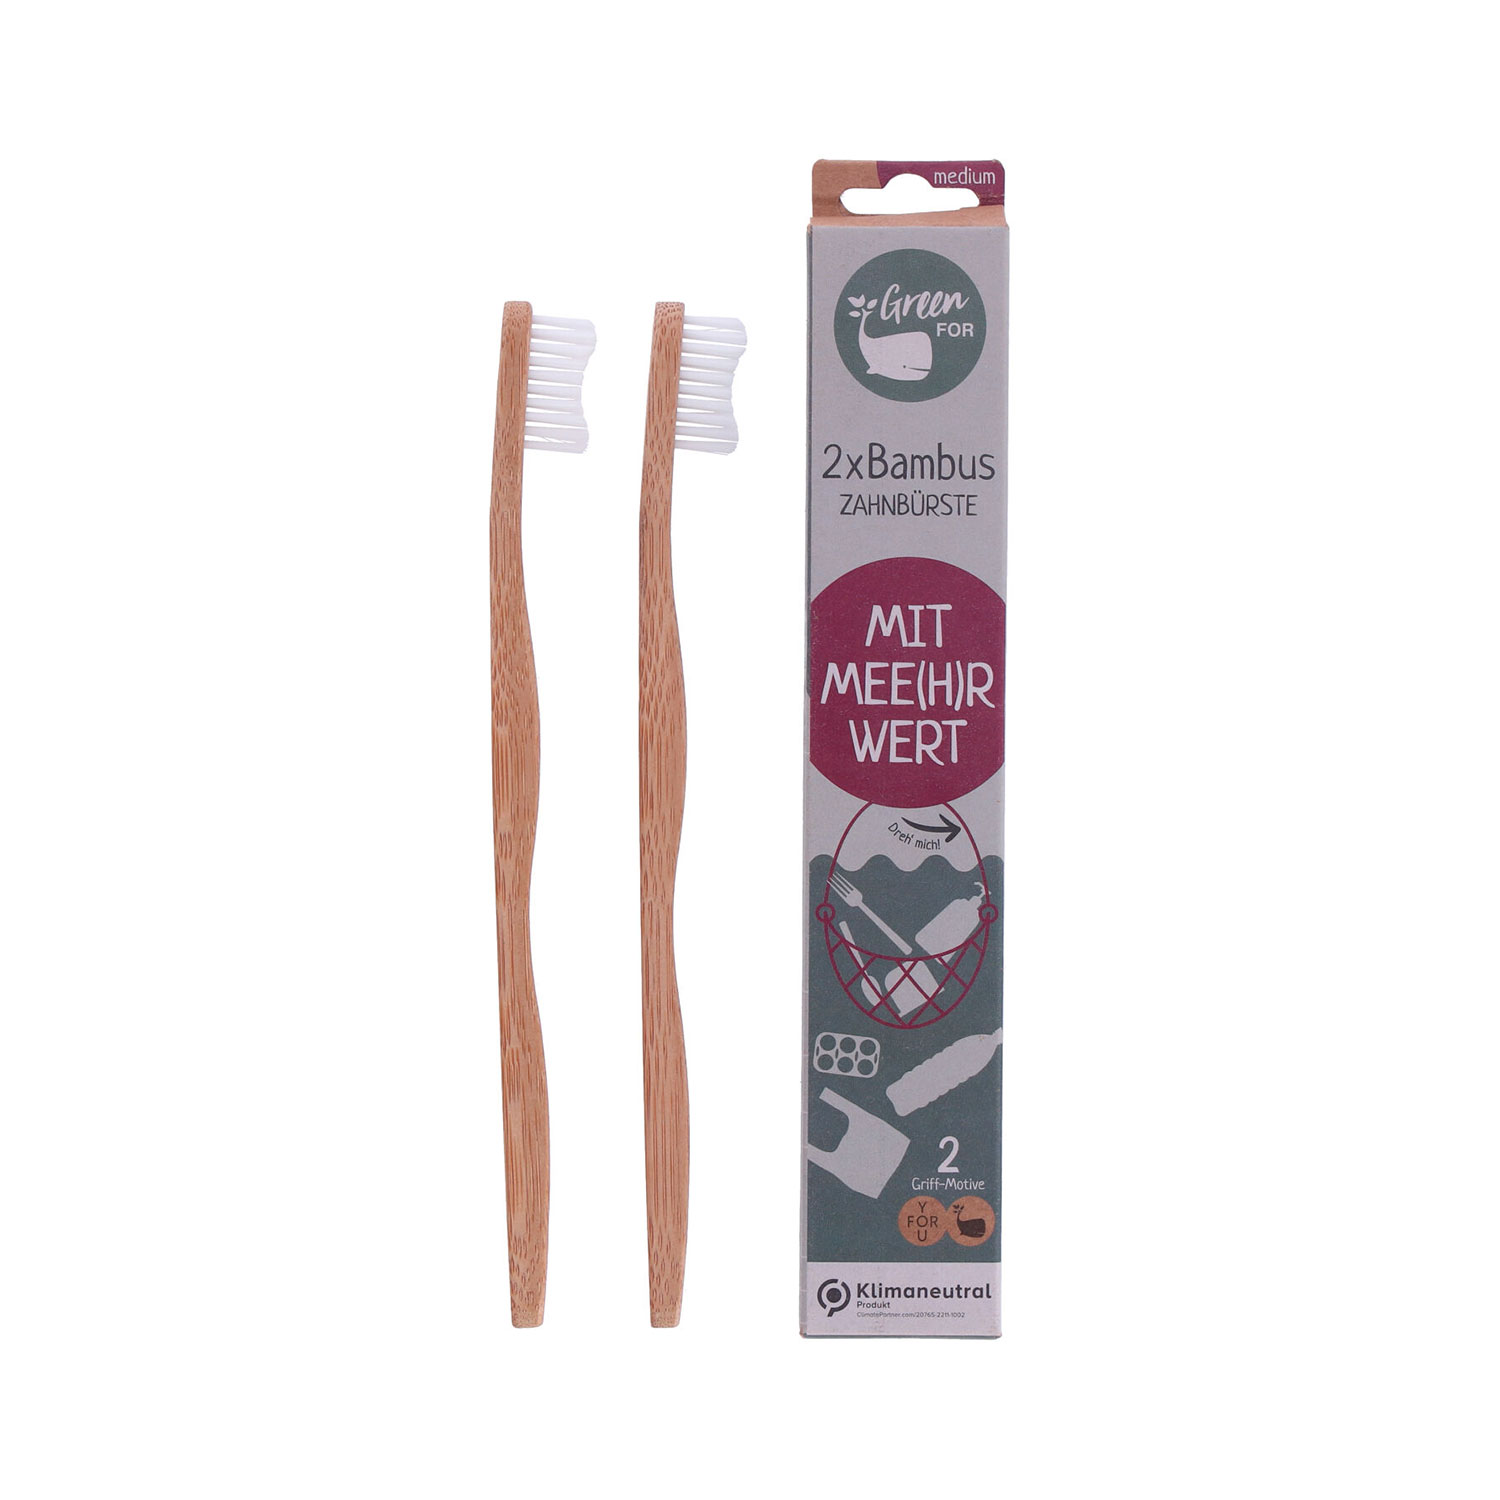 Zahnbürste aus Bambus mit Mee(h)rwert 2 Stück